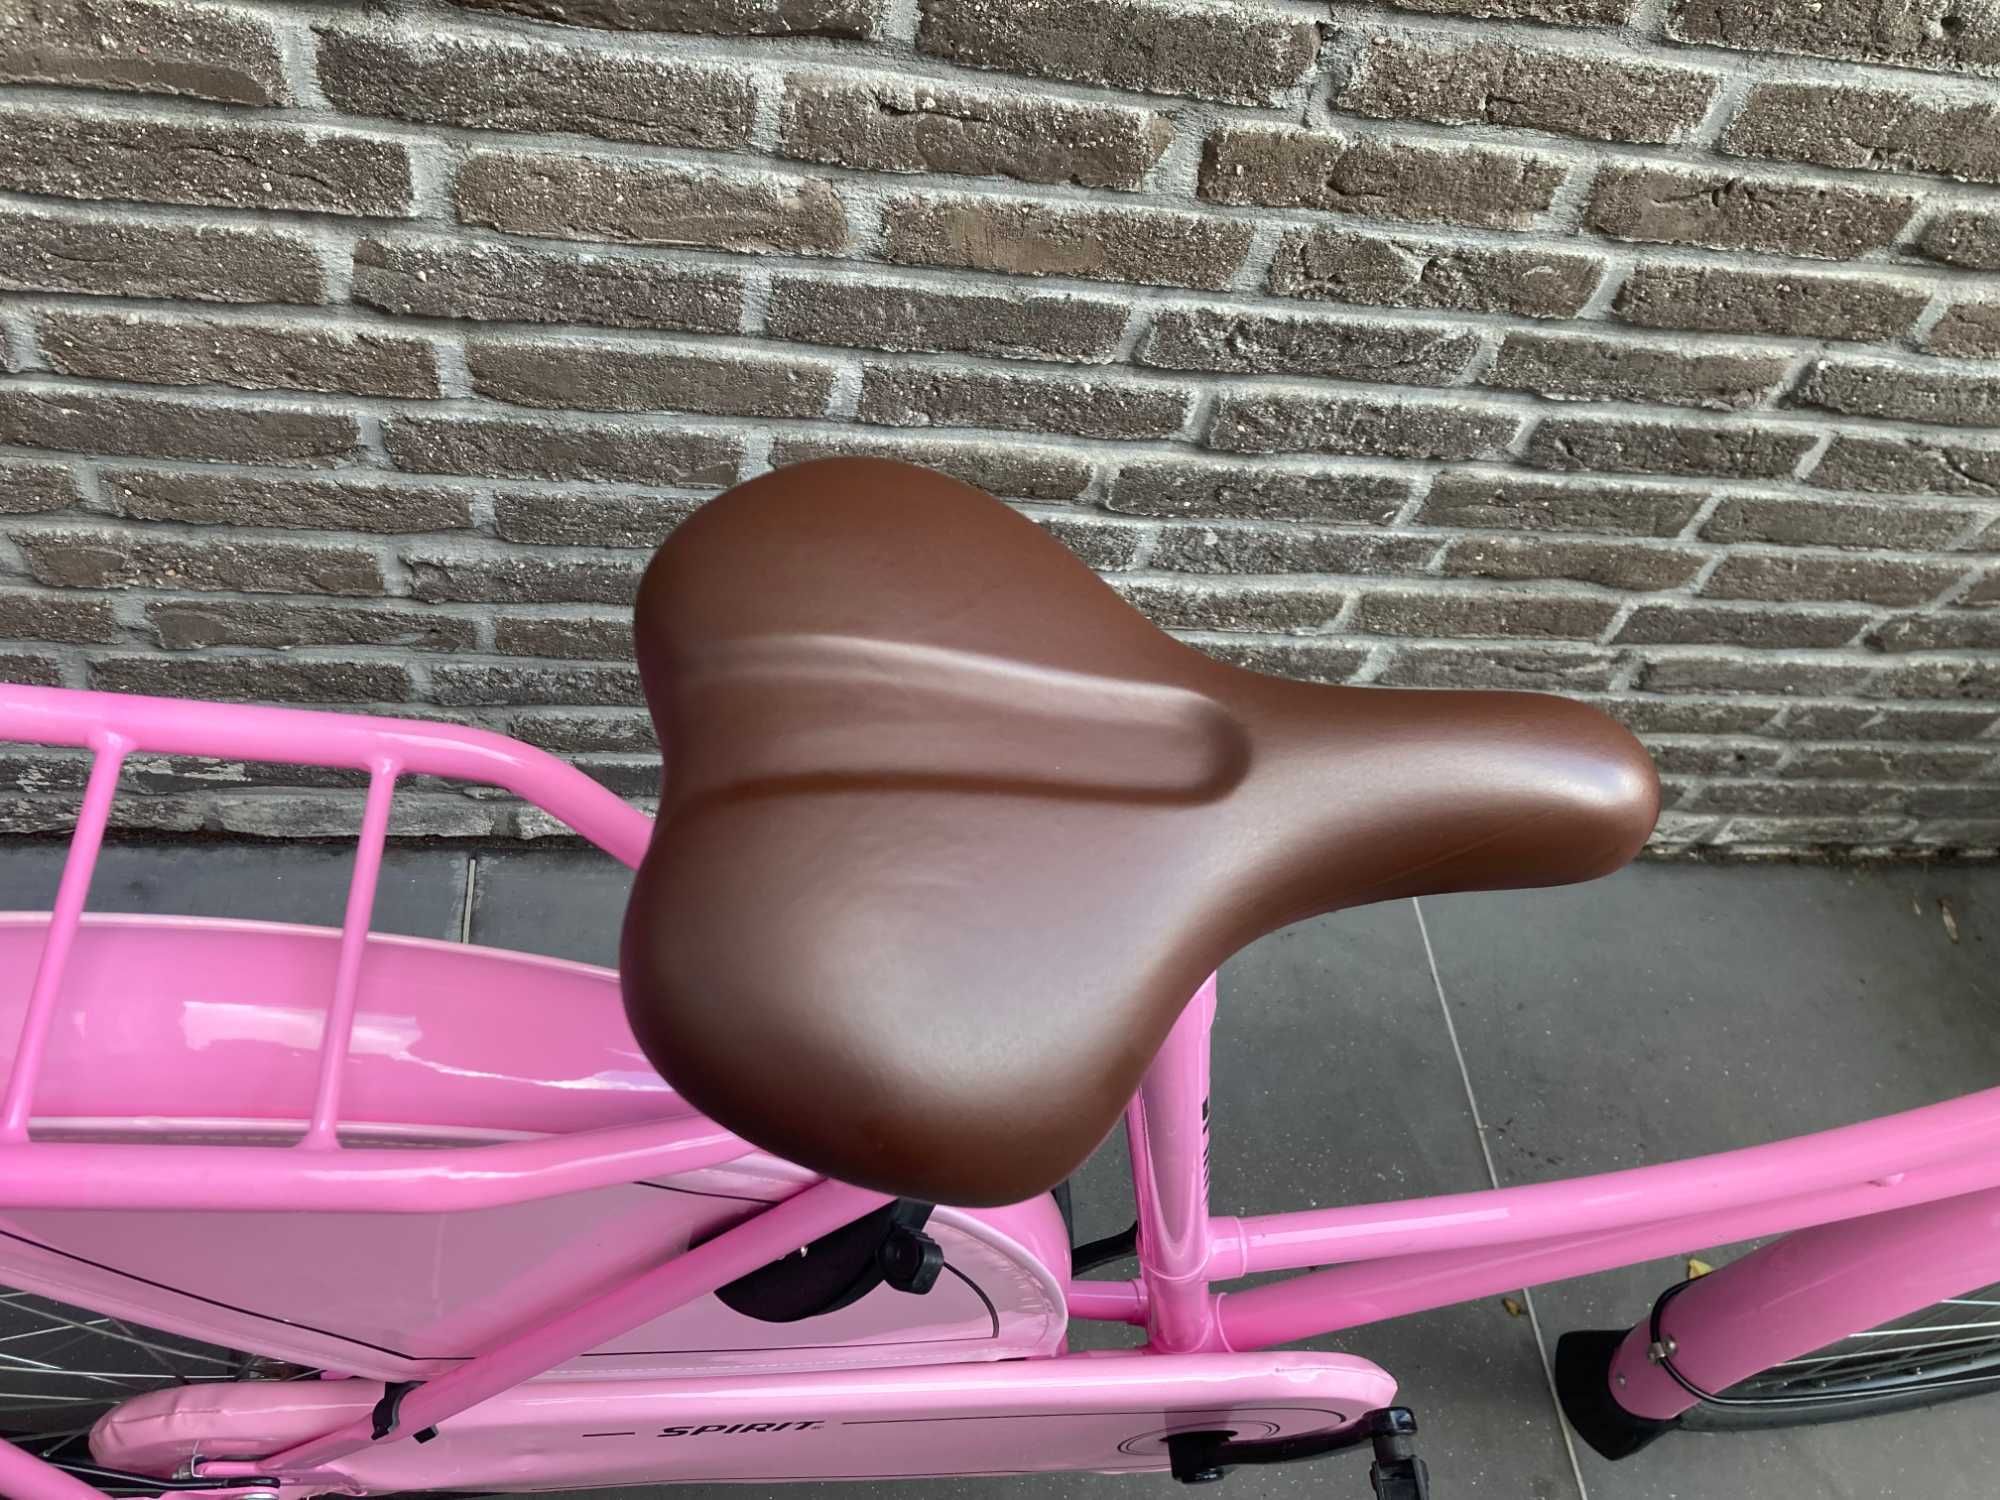 Bicicleta de transporte rosa